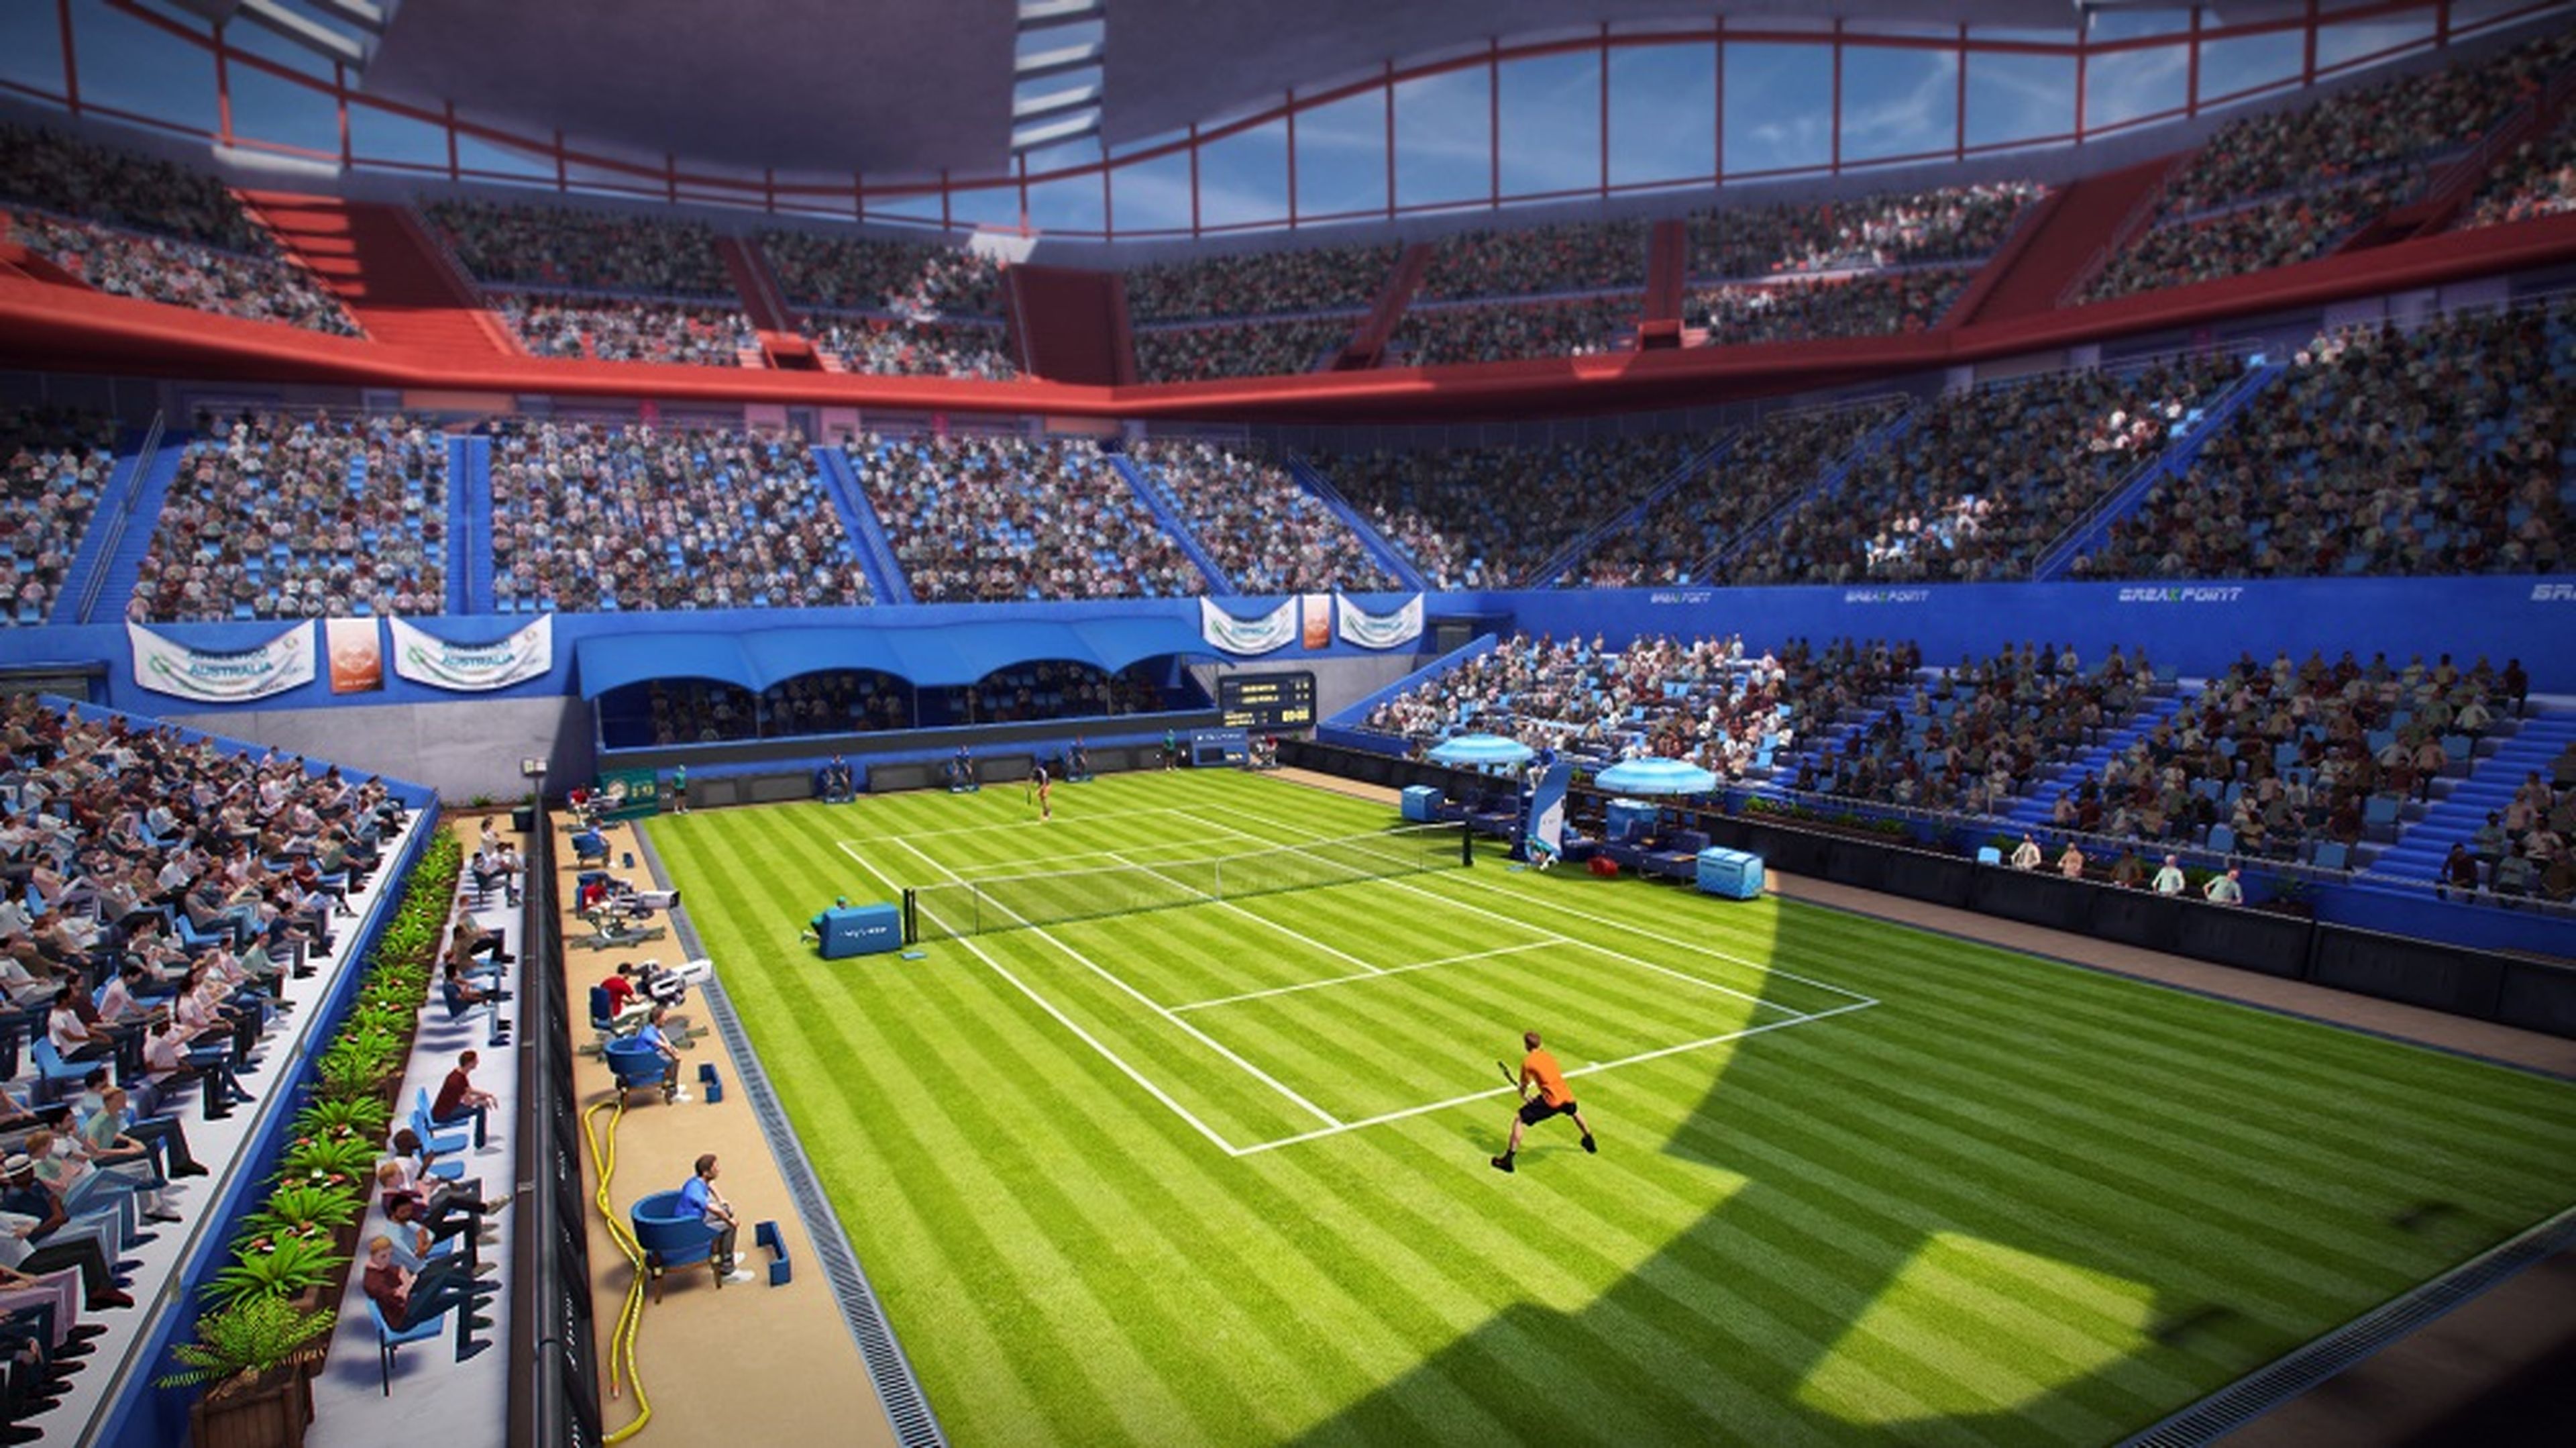 Avance de Tennis World Tour para PS4, Xbox One, Switch y PC